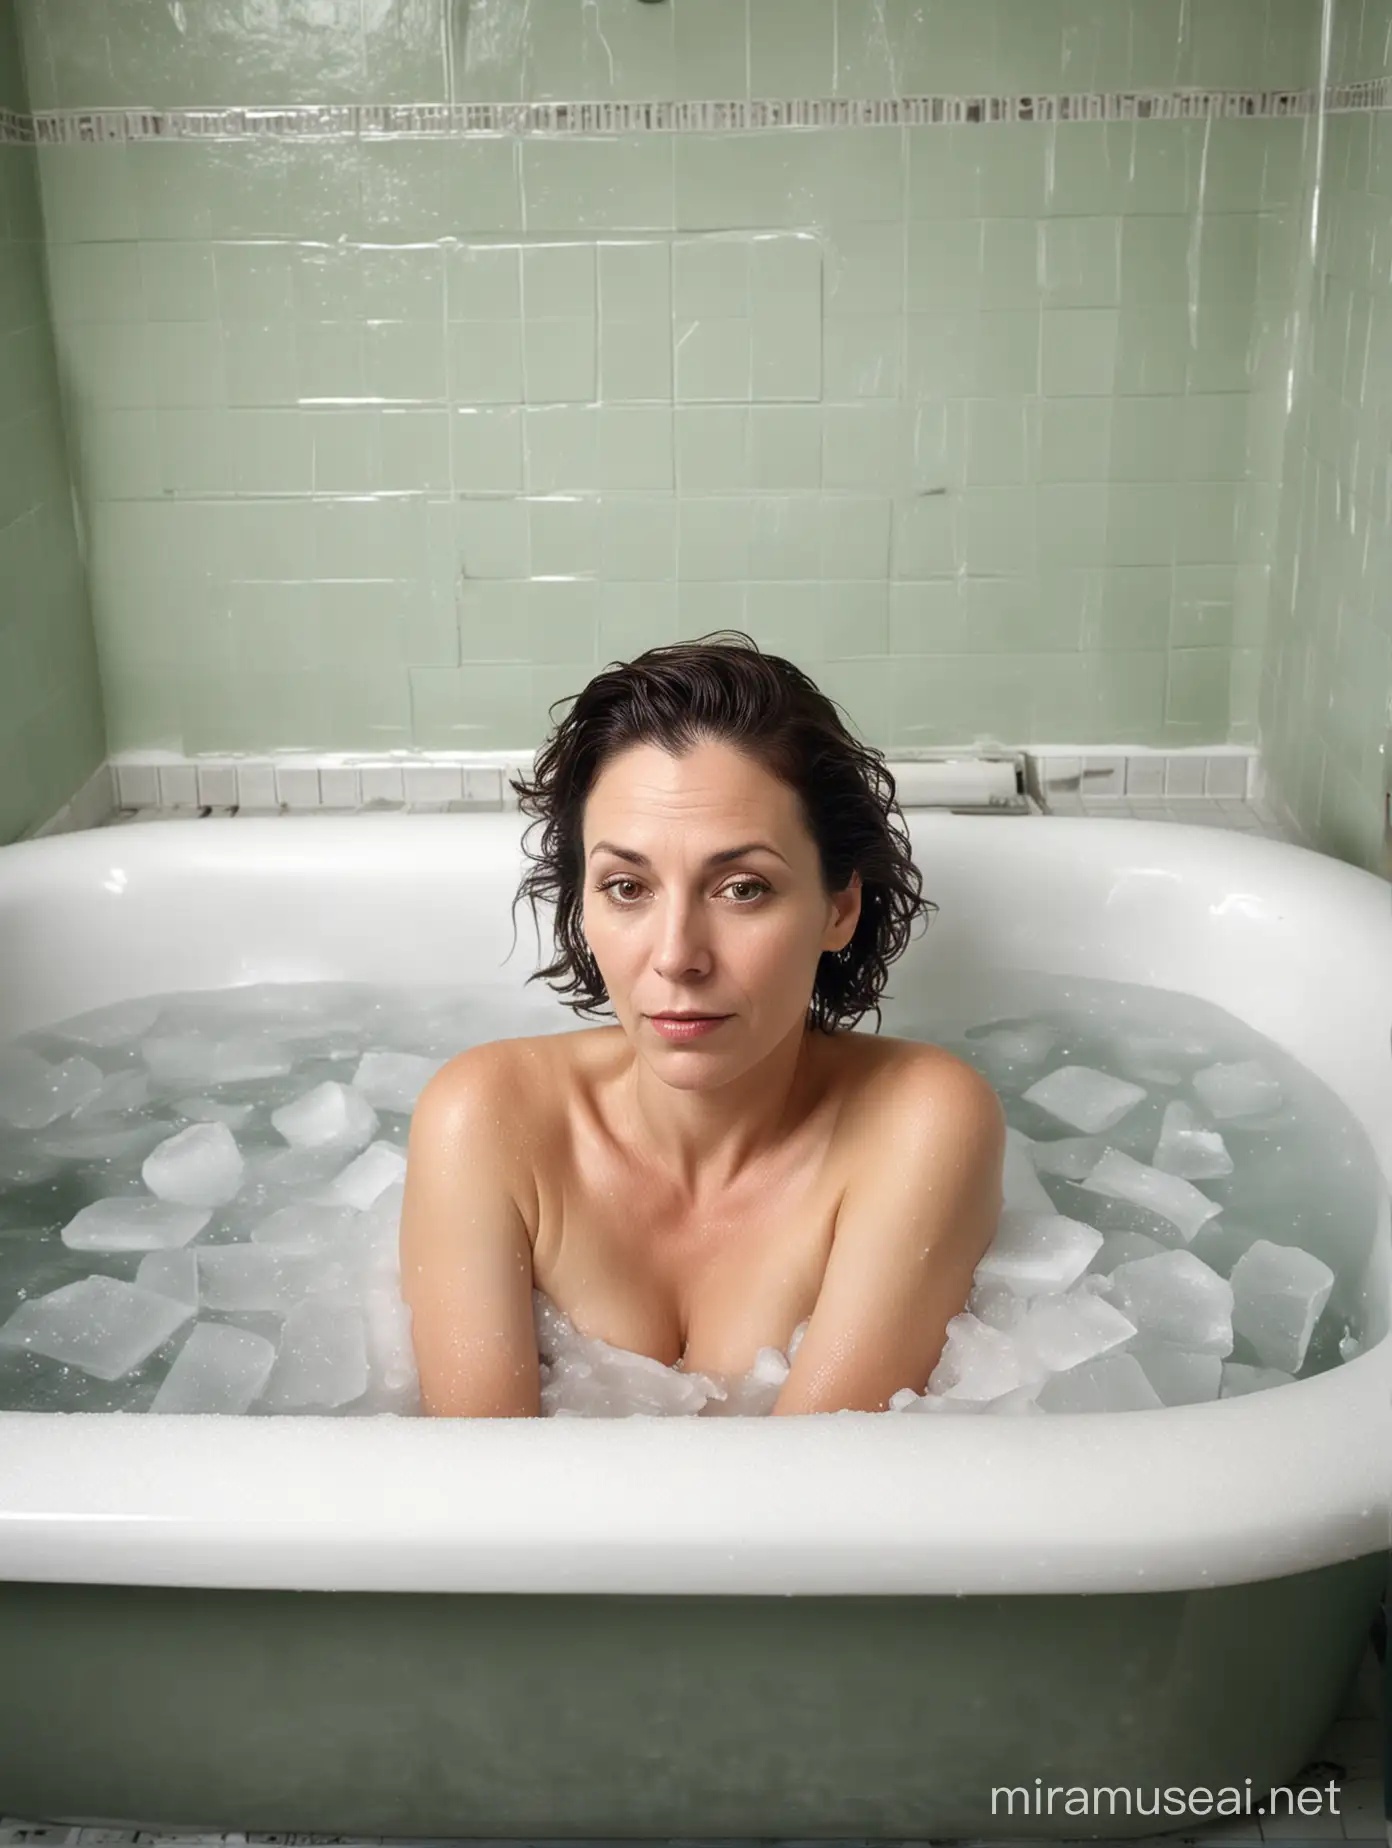 Mulher de 44 anos deitada numa banheira cheia de gelo numa casa de banho dos anos 30. Ambiência surrealista.